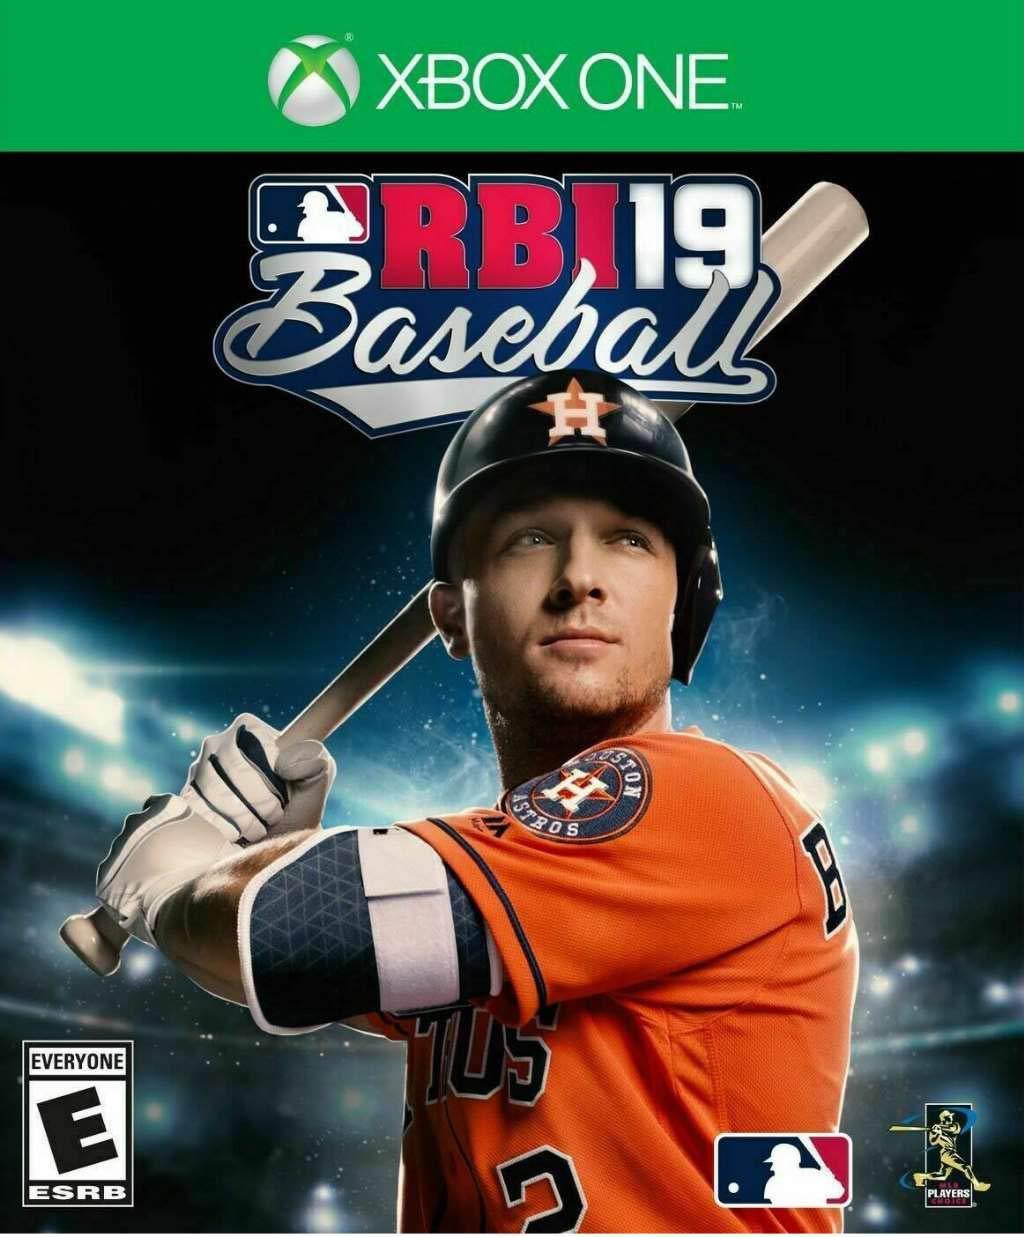 RBI Baseball 2019